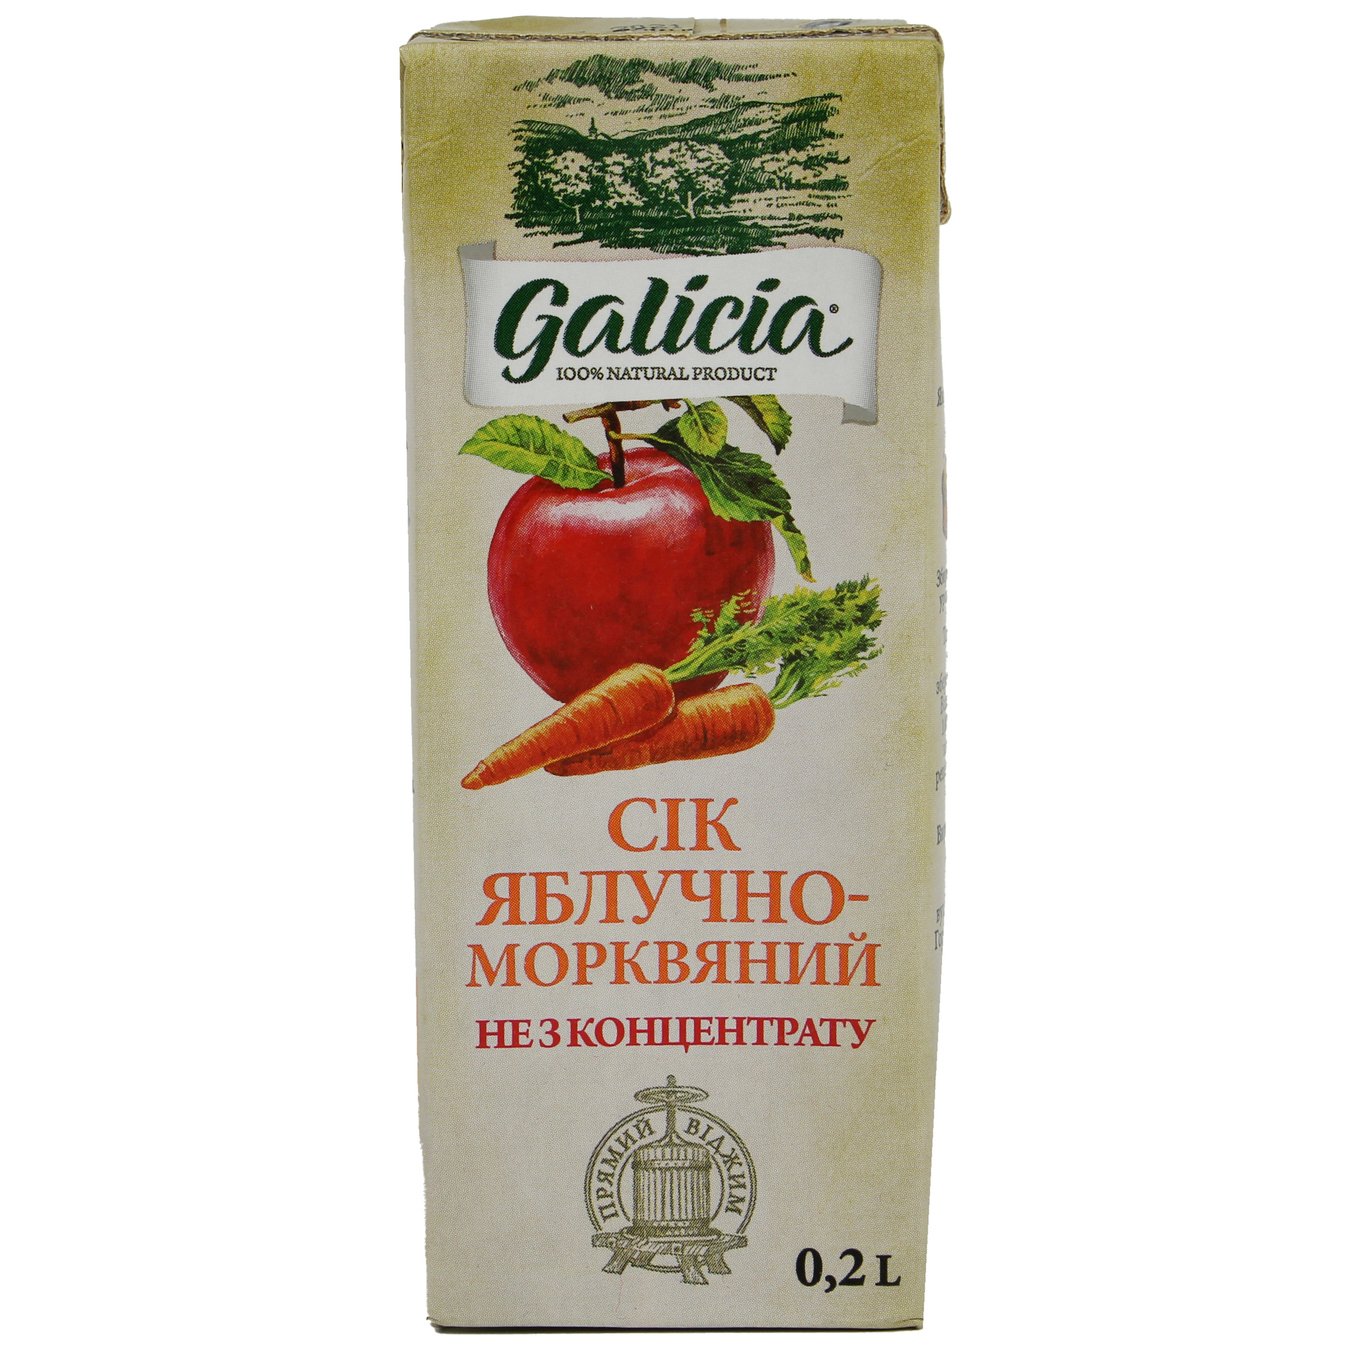 Сок Galicia Яблочно-морковный с мякотью 0,2л